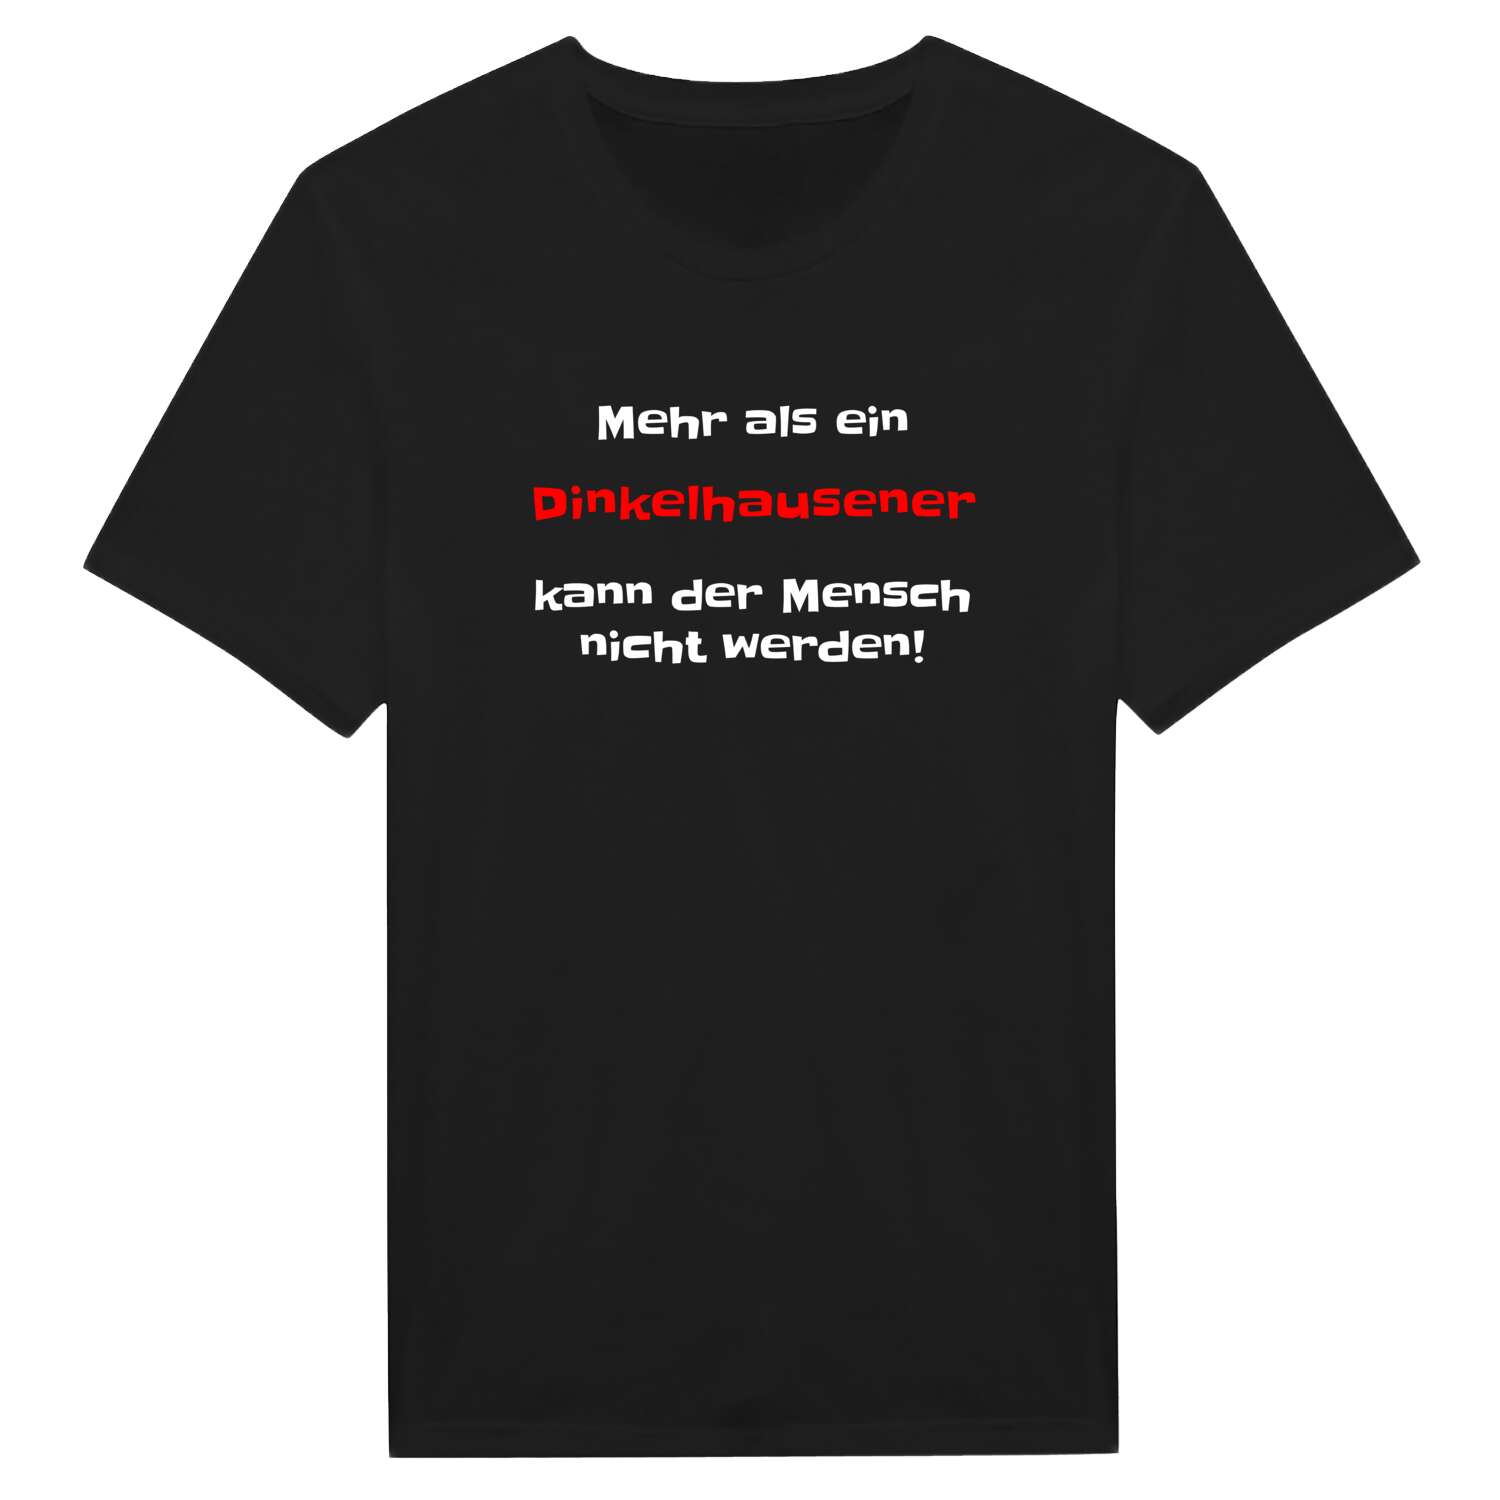 Dinkelhausen T-Shirt »Mehr als ein«